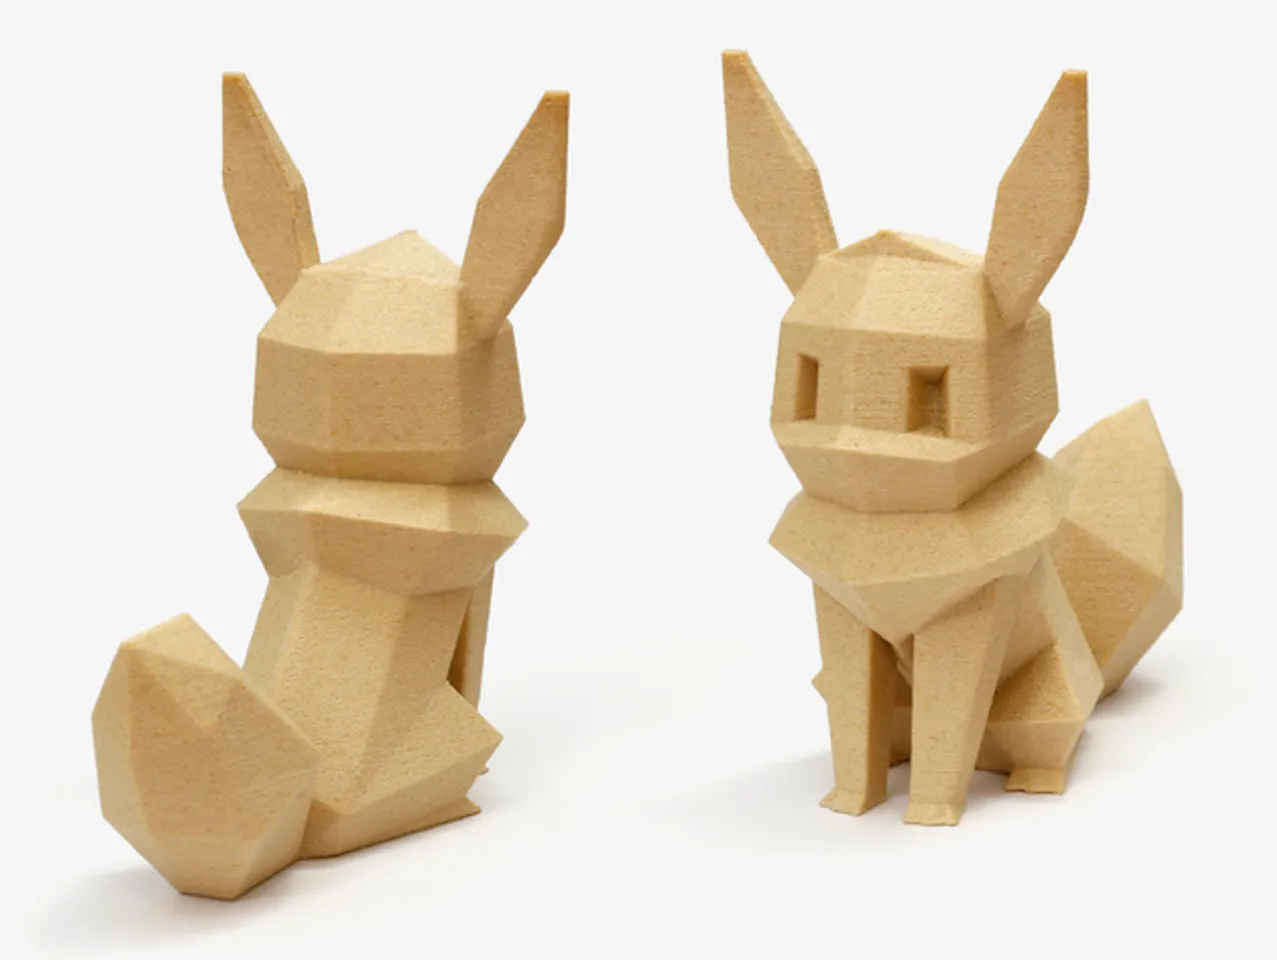 Pokemon - All Eeveelutions 3D model 3D printable